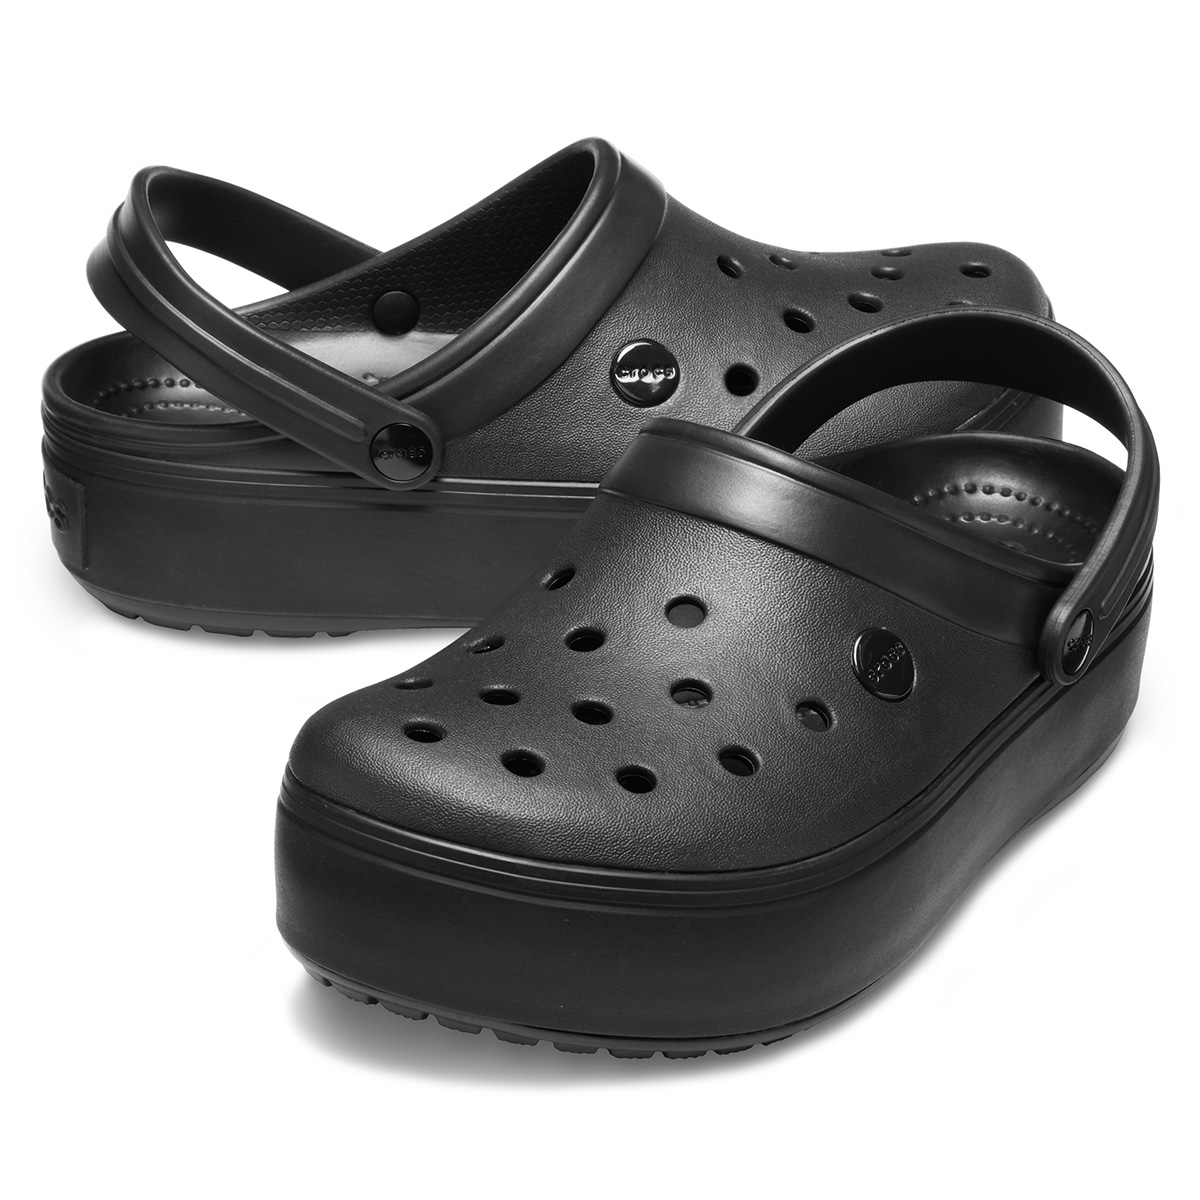 Кроксы на подошве. Crocs Crocband Clog Black. Crocs Crocband platform Clog. Черные сабо Crocs Bayaband Clog. Сабо крокс на платформе.